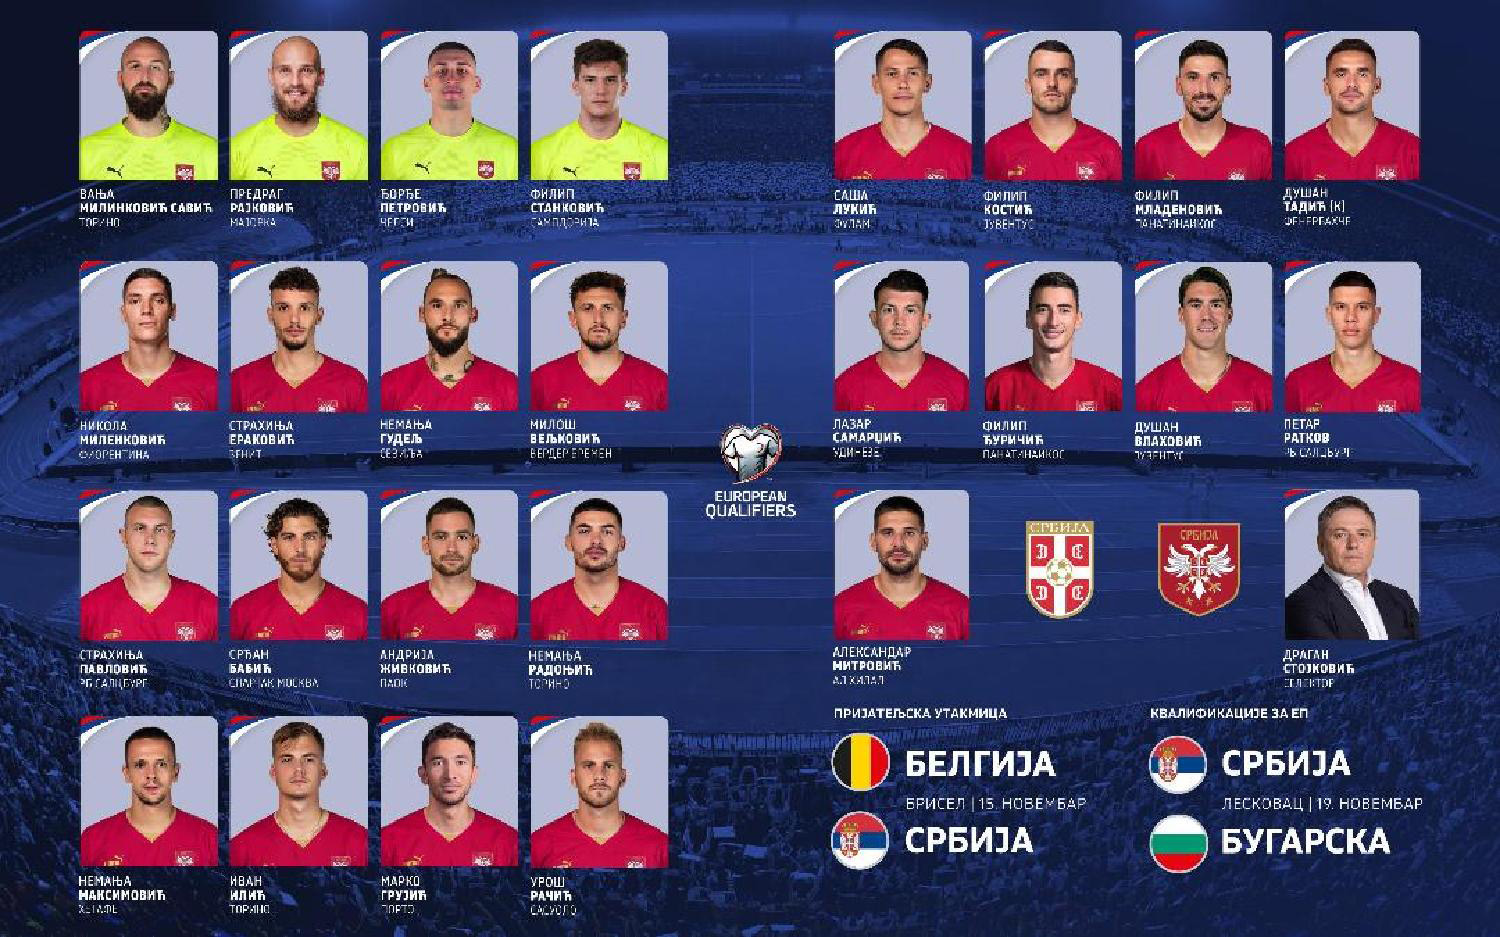 Hrvatski list: Srbi saznali šta ih čeka na Evropskom prvenstvu, krenulo očajavanje da su to "najgore moguće vesti" 2